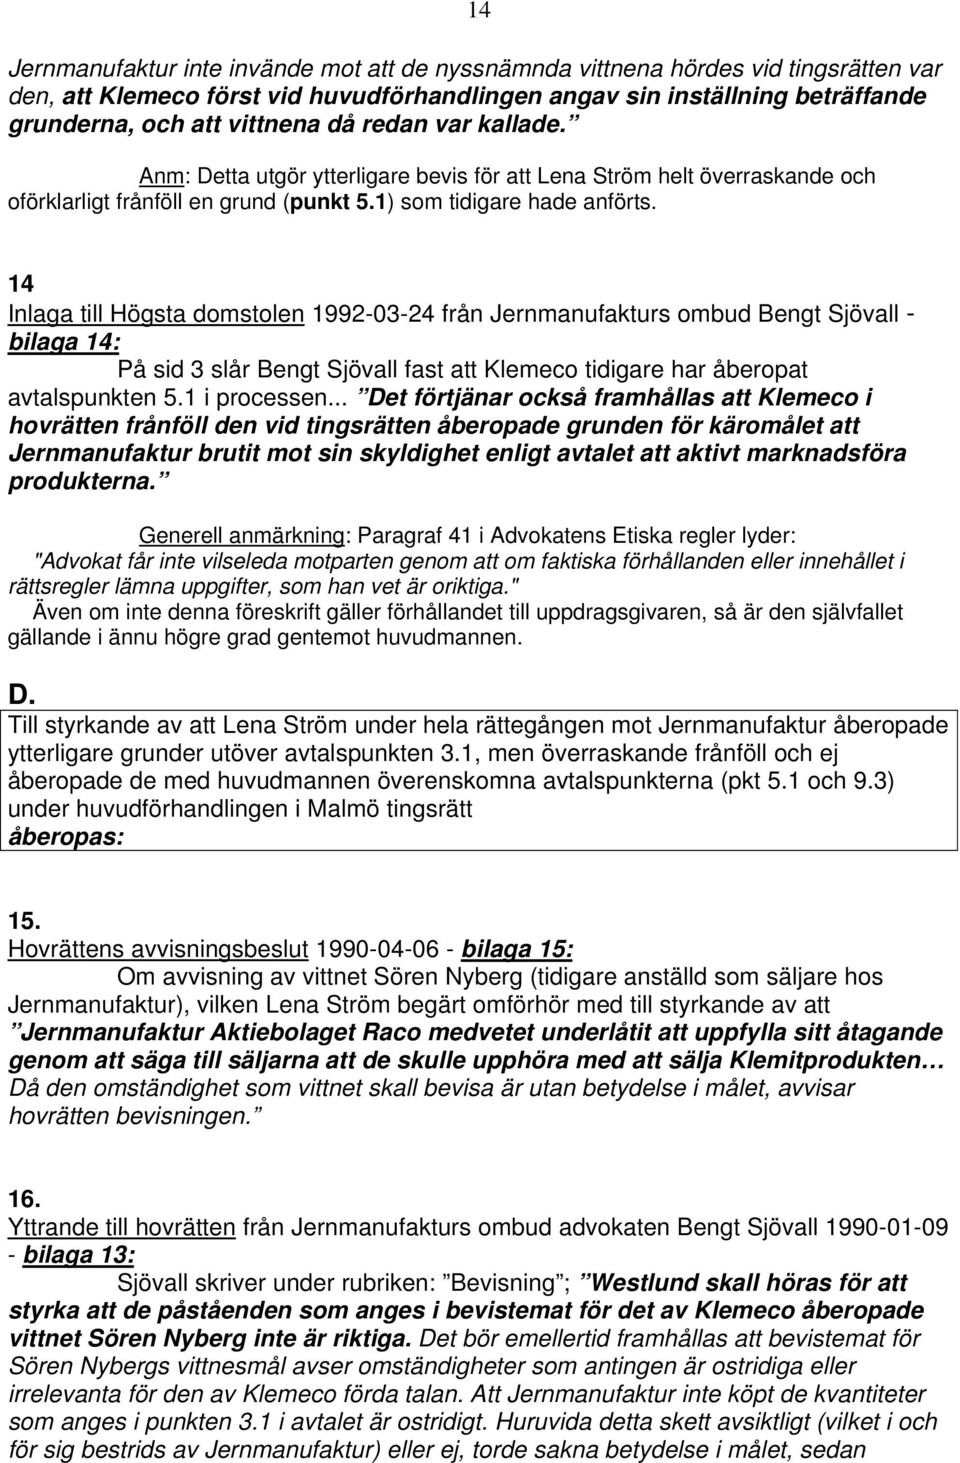 14 Inlaga till Högsta domstolen 1992-03-24 från Jernmanufakturs ombud Bengt Sjövall - bilaga 14: På sid 3 slår Bengt Sjövall fast att Klemeco tidigare har åberopat avtalspunkten 5.1 i processen.